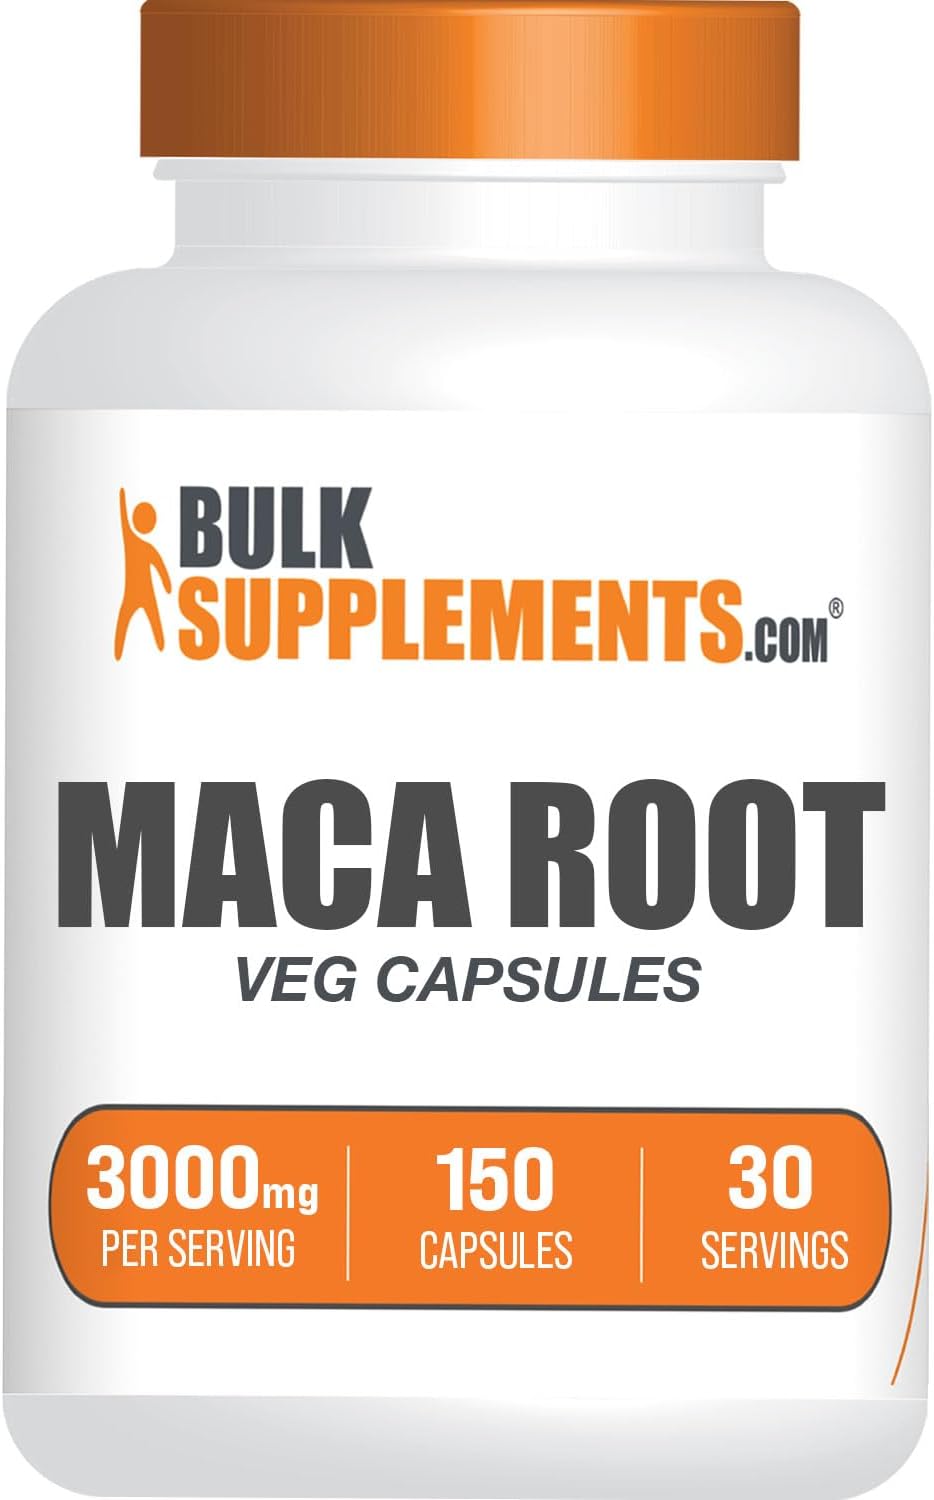 BULKSUPPLEMENTS.COM Maca Root Capsules - Maca Supplement, Maca Root 3000mg - Maca Root for Men & Women, Vegan & Gluten Free - 5 Maca Capsules per Serving, 150 Veg Capsules, Pack of 1